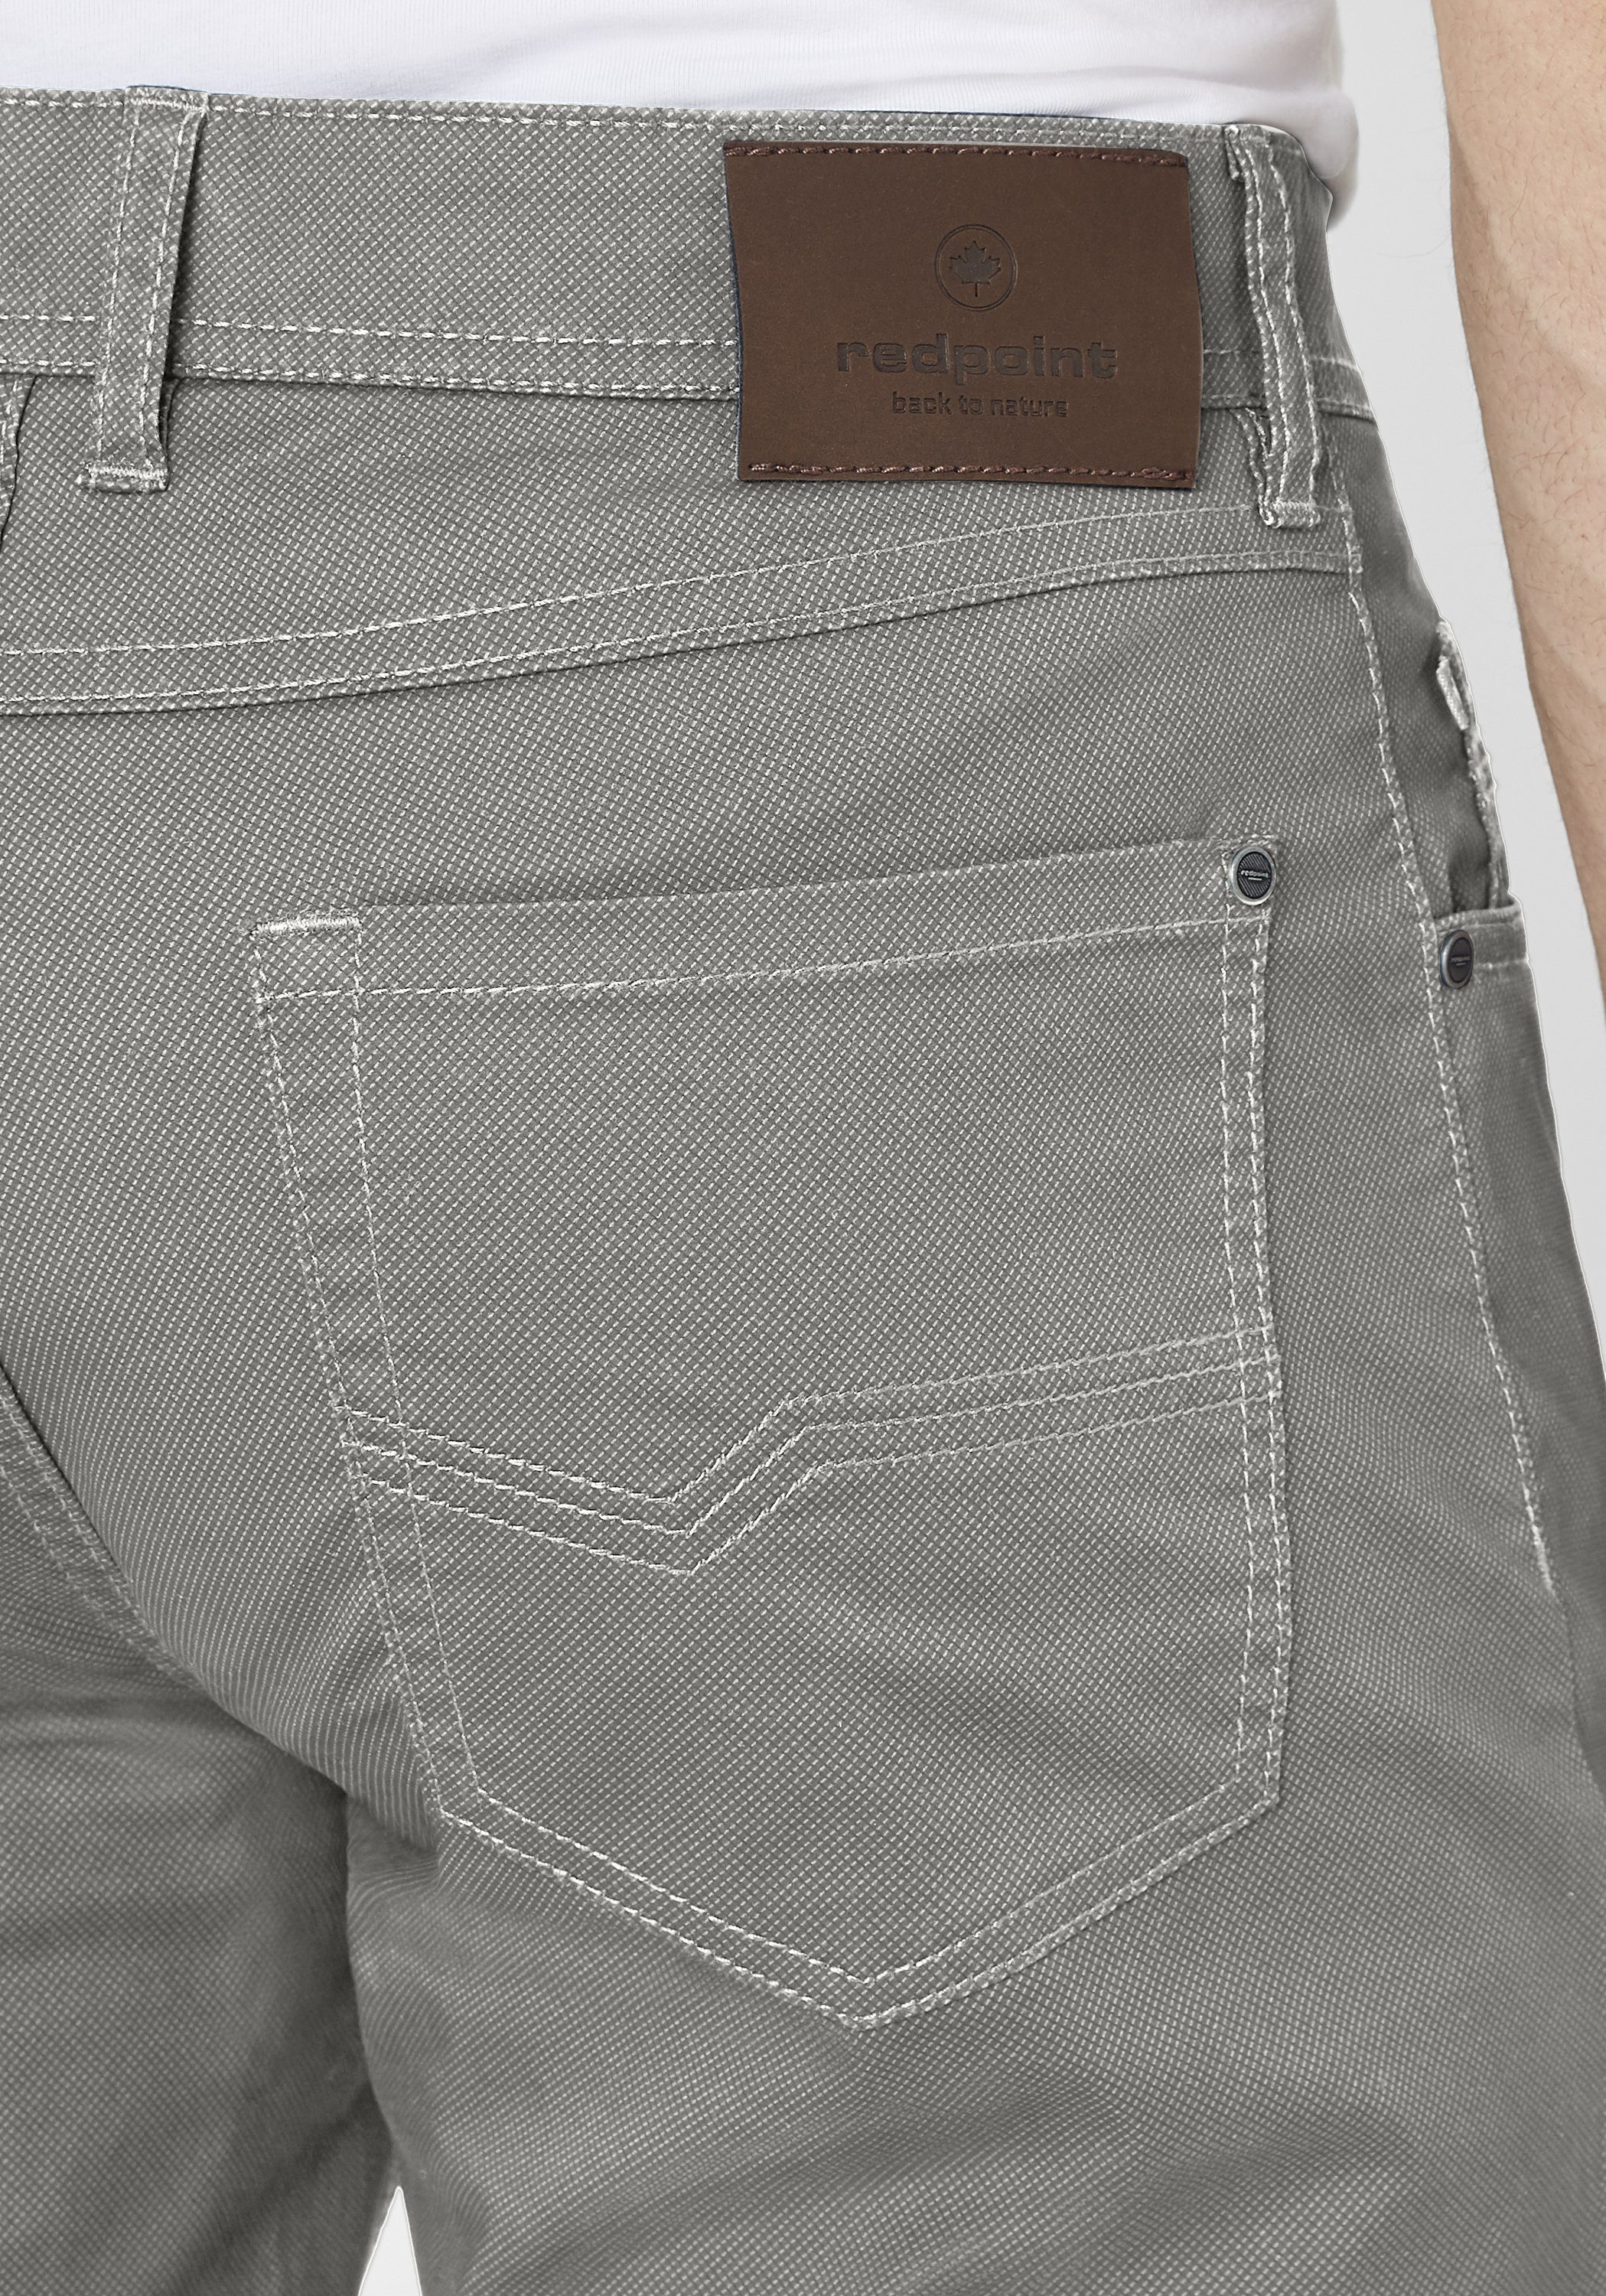 grey Hose Redpoint MILTON super stretch Pocket Stoffhose 5